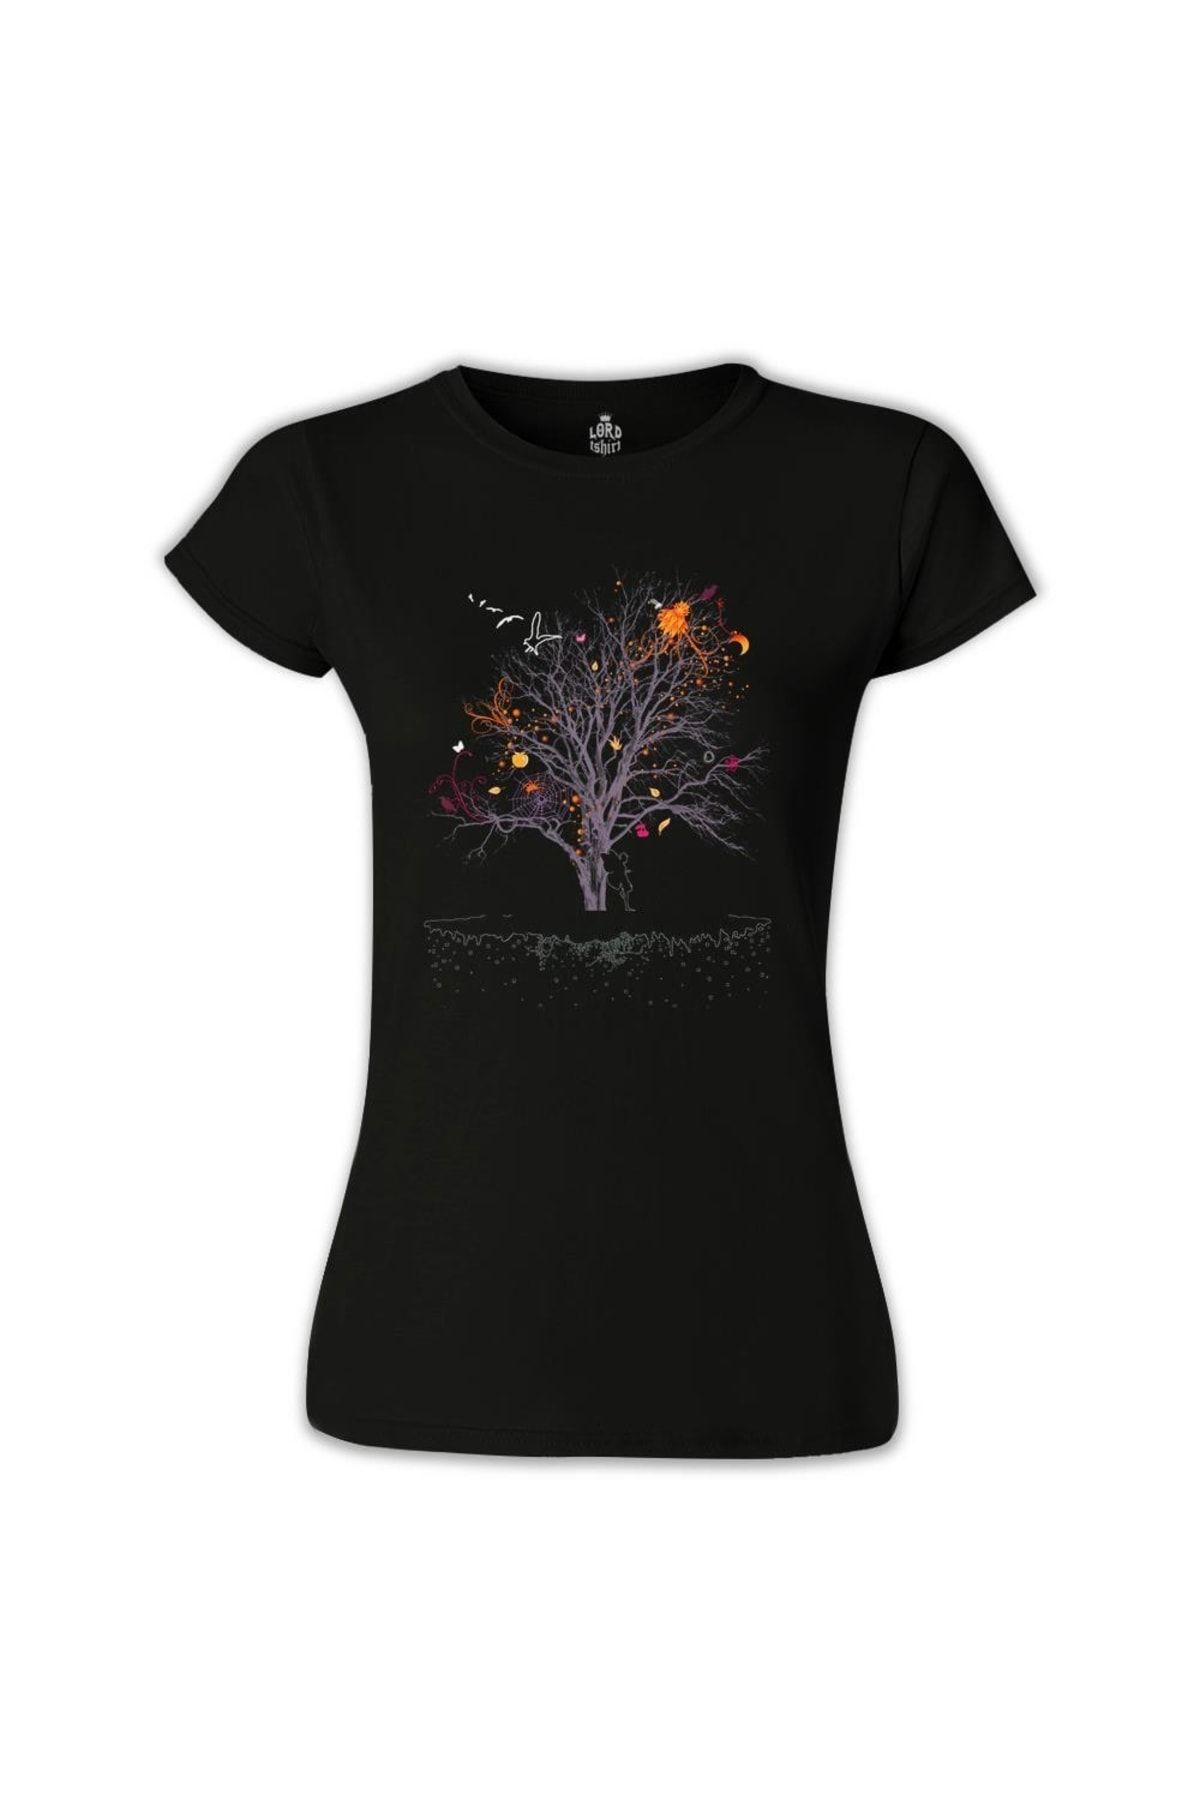 Lord T-Shirt Ağaç Perisi Siyah Kadın  Tshirt